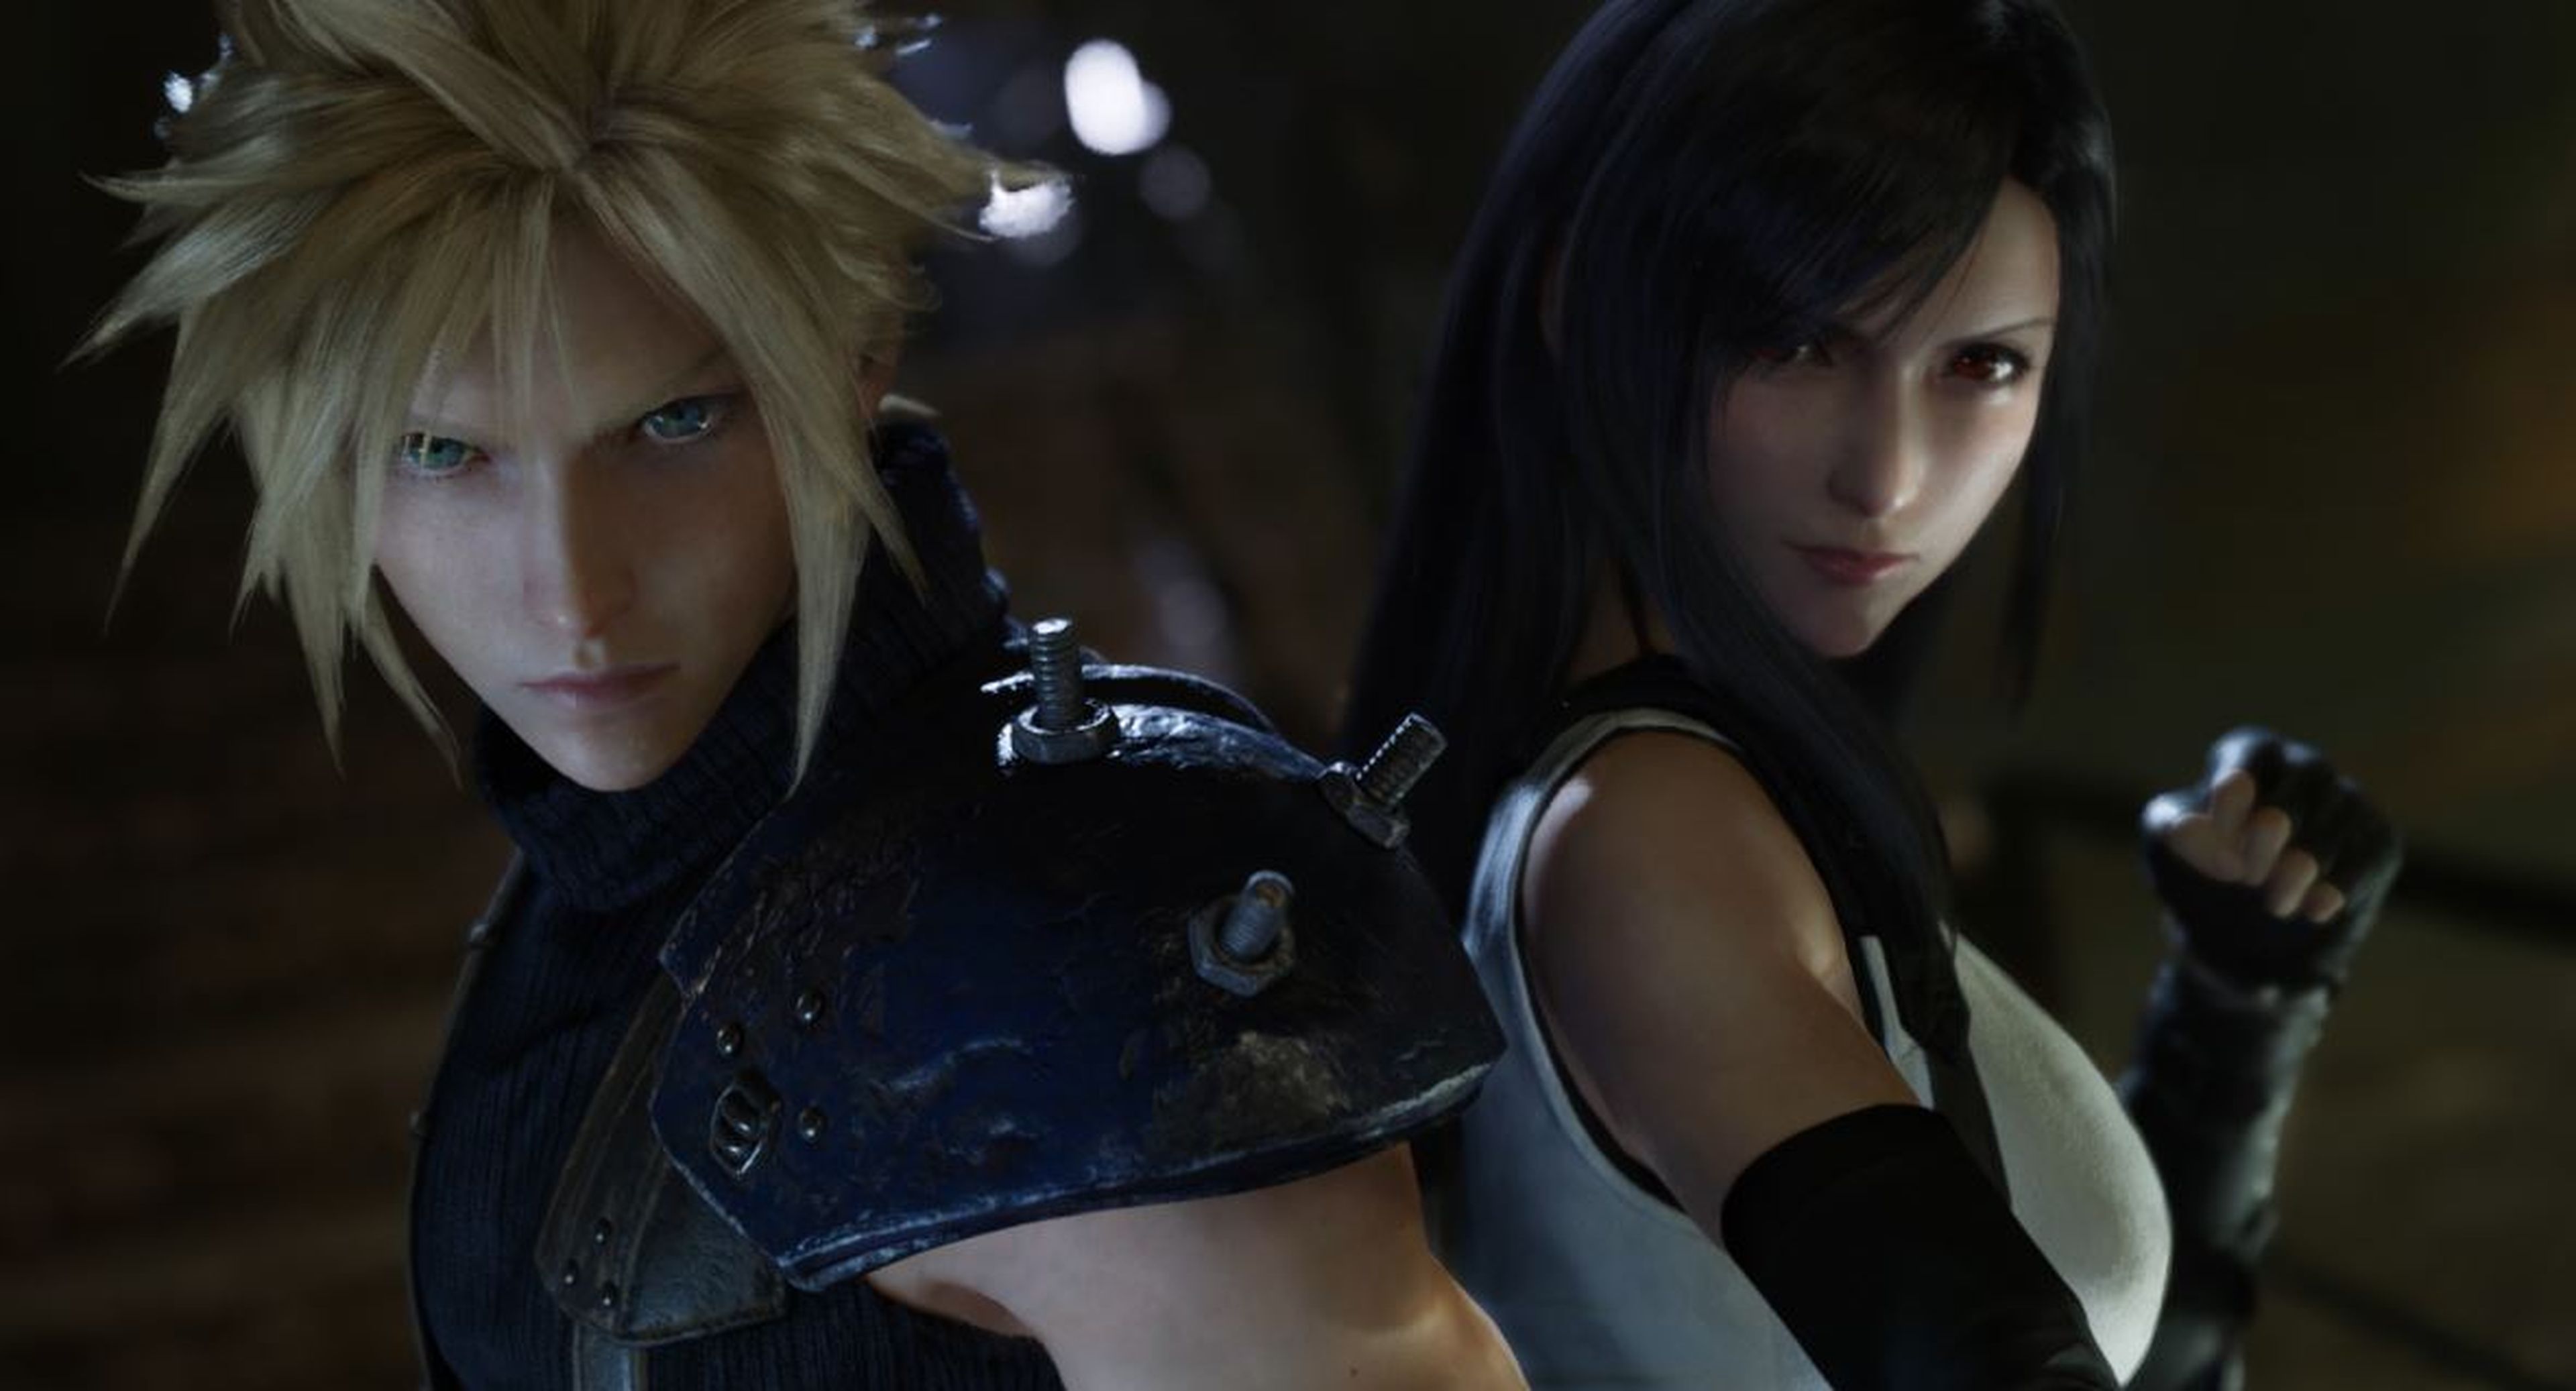 'Final Fantasy VII Remake' (imagen) fue considerado el mejor juego del show en la gala de premios de la E3 2019.